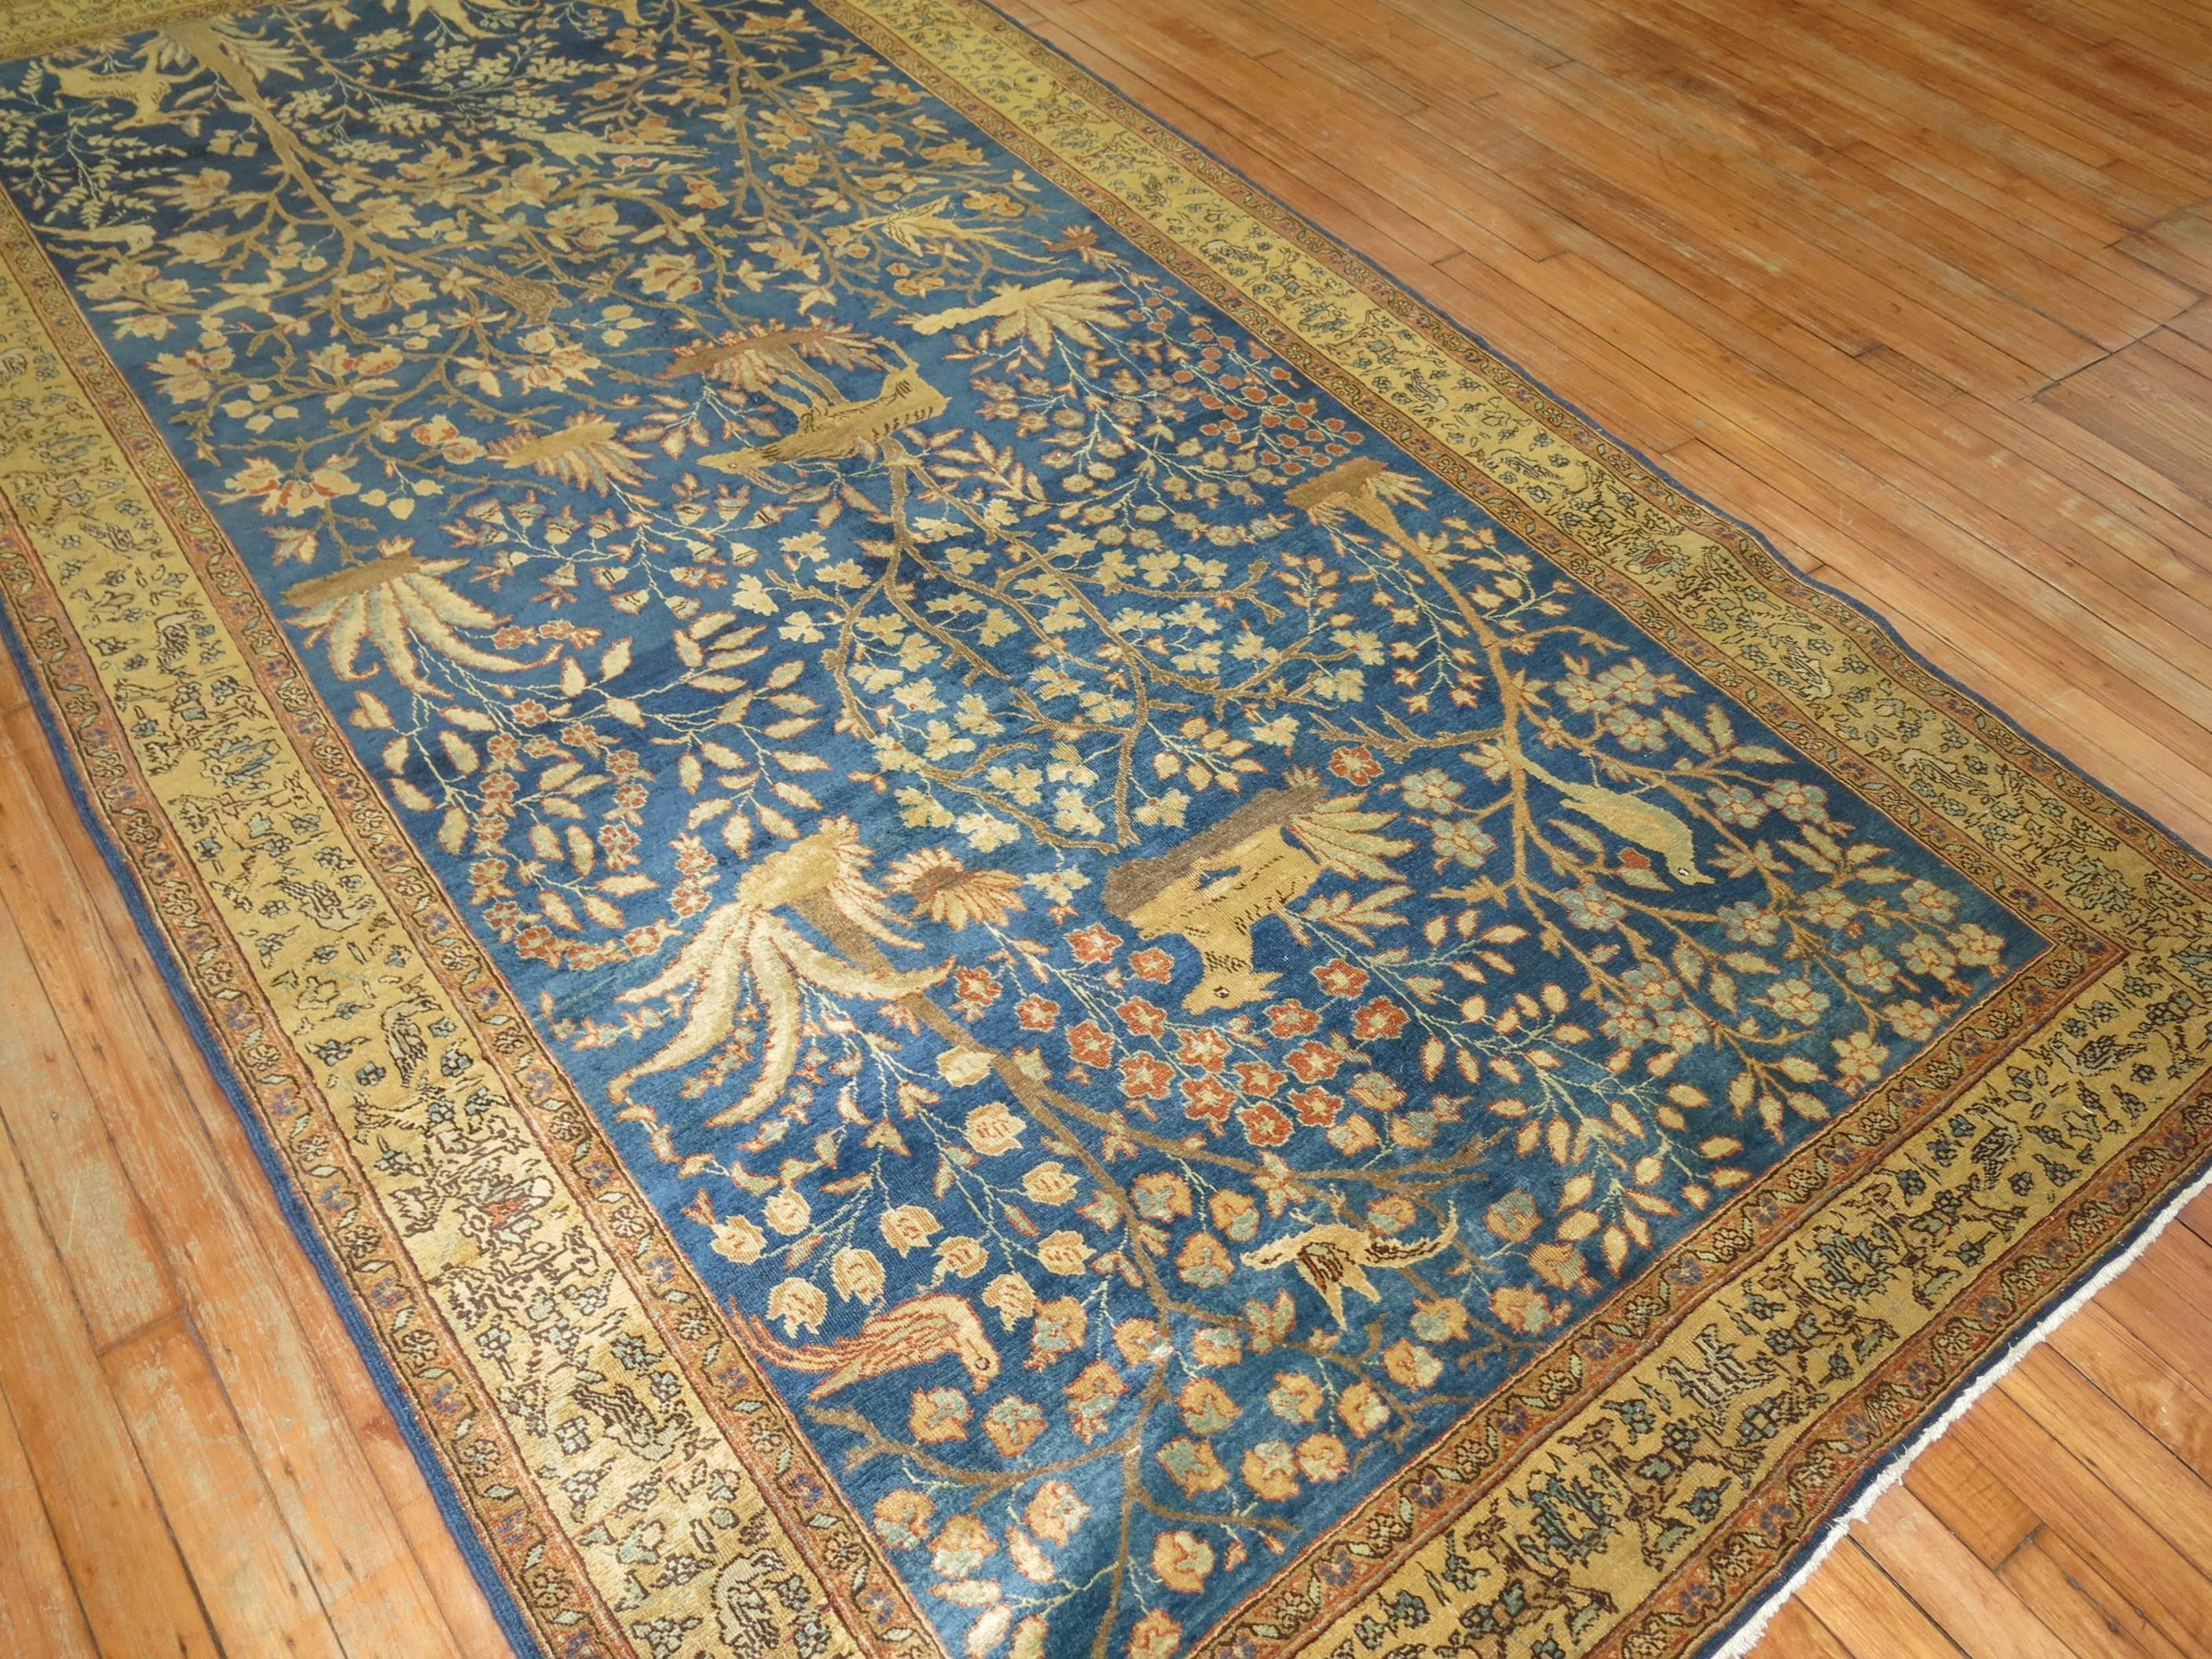 20th Century Pictorial Antique Persian Tabriz Carpet in Blue